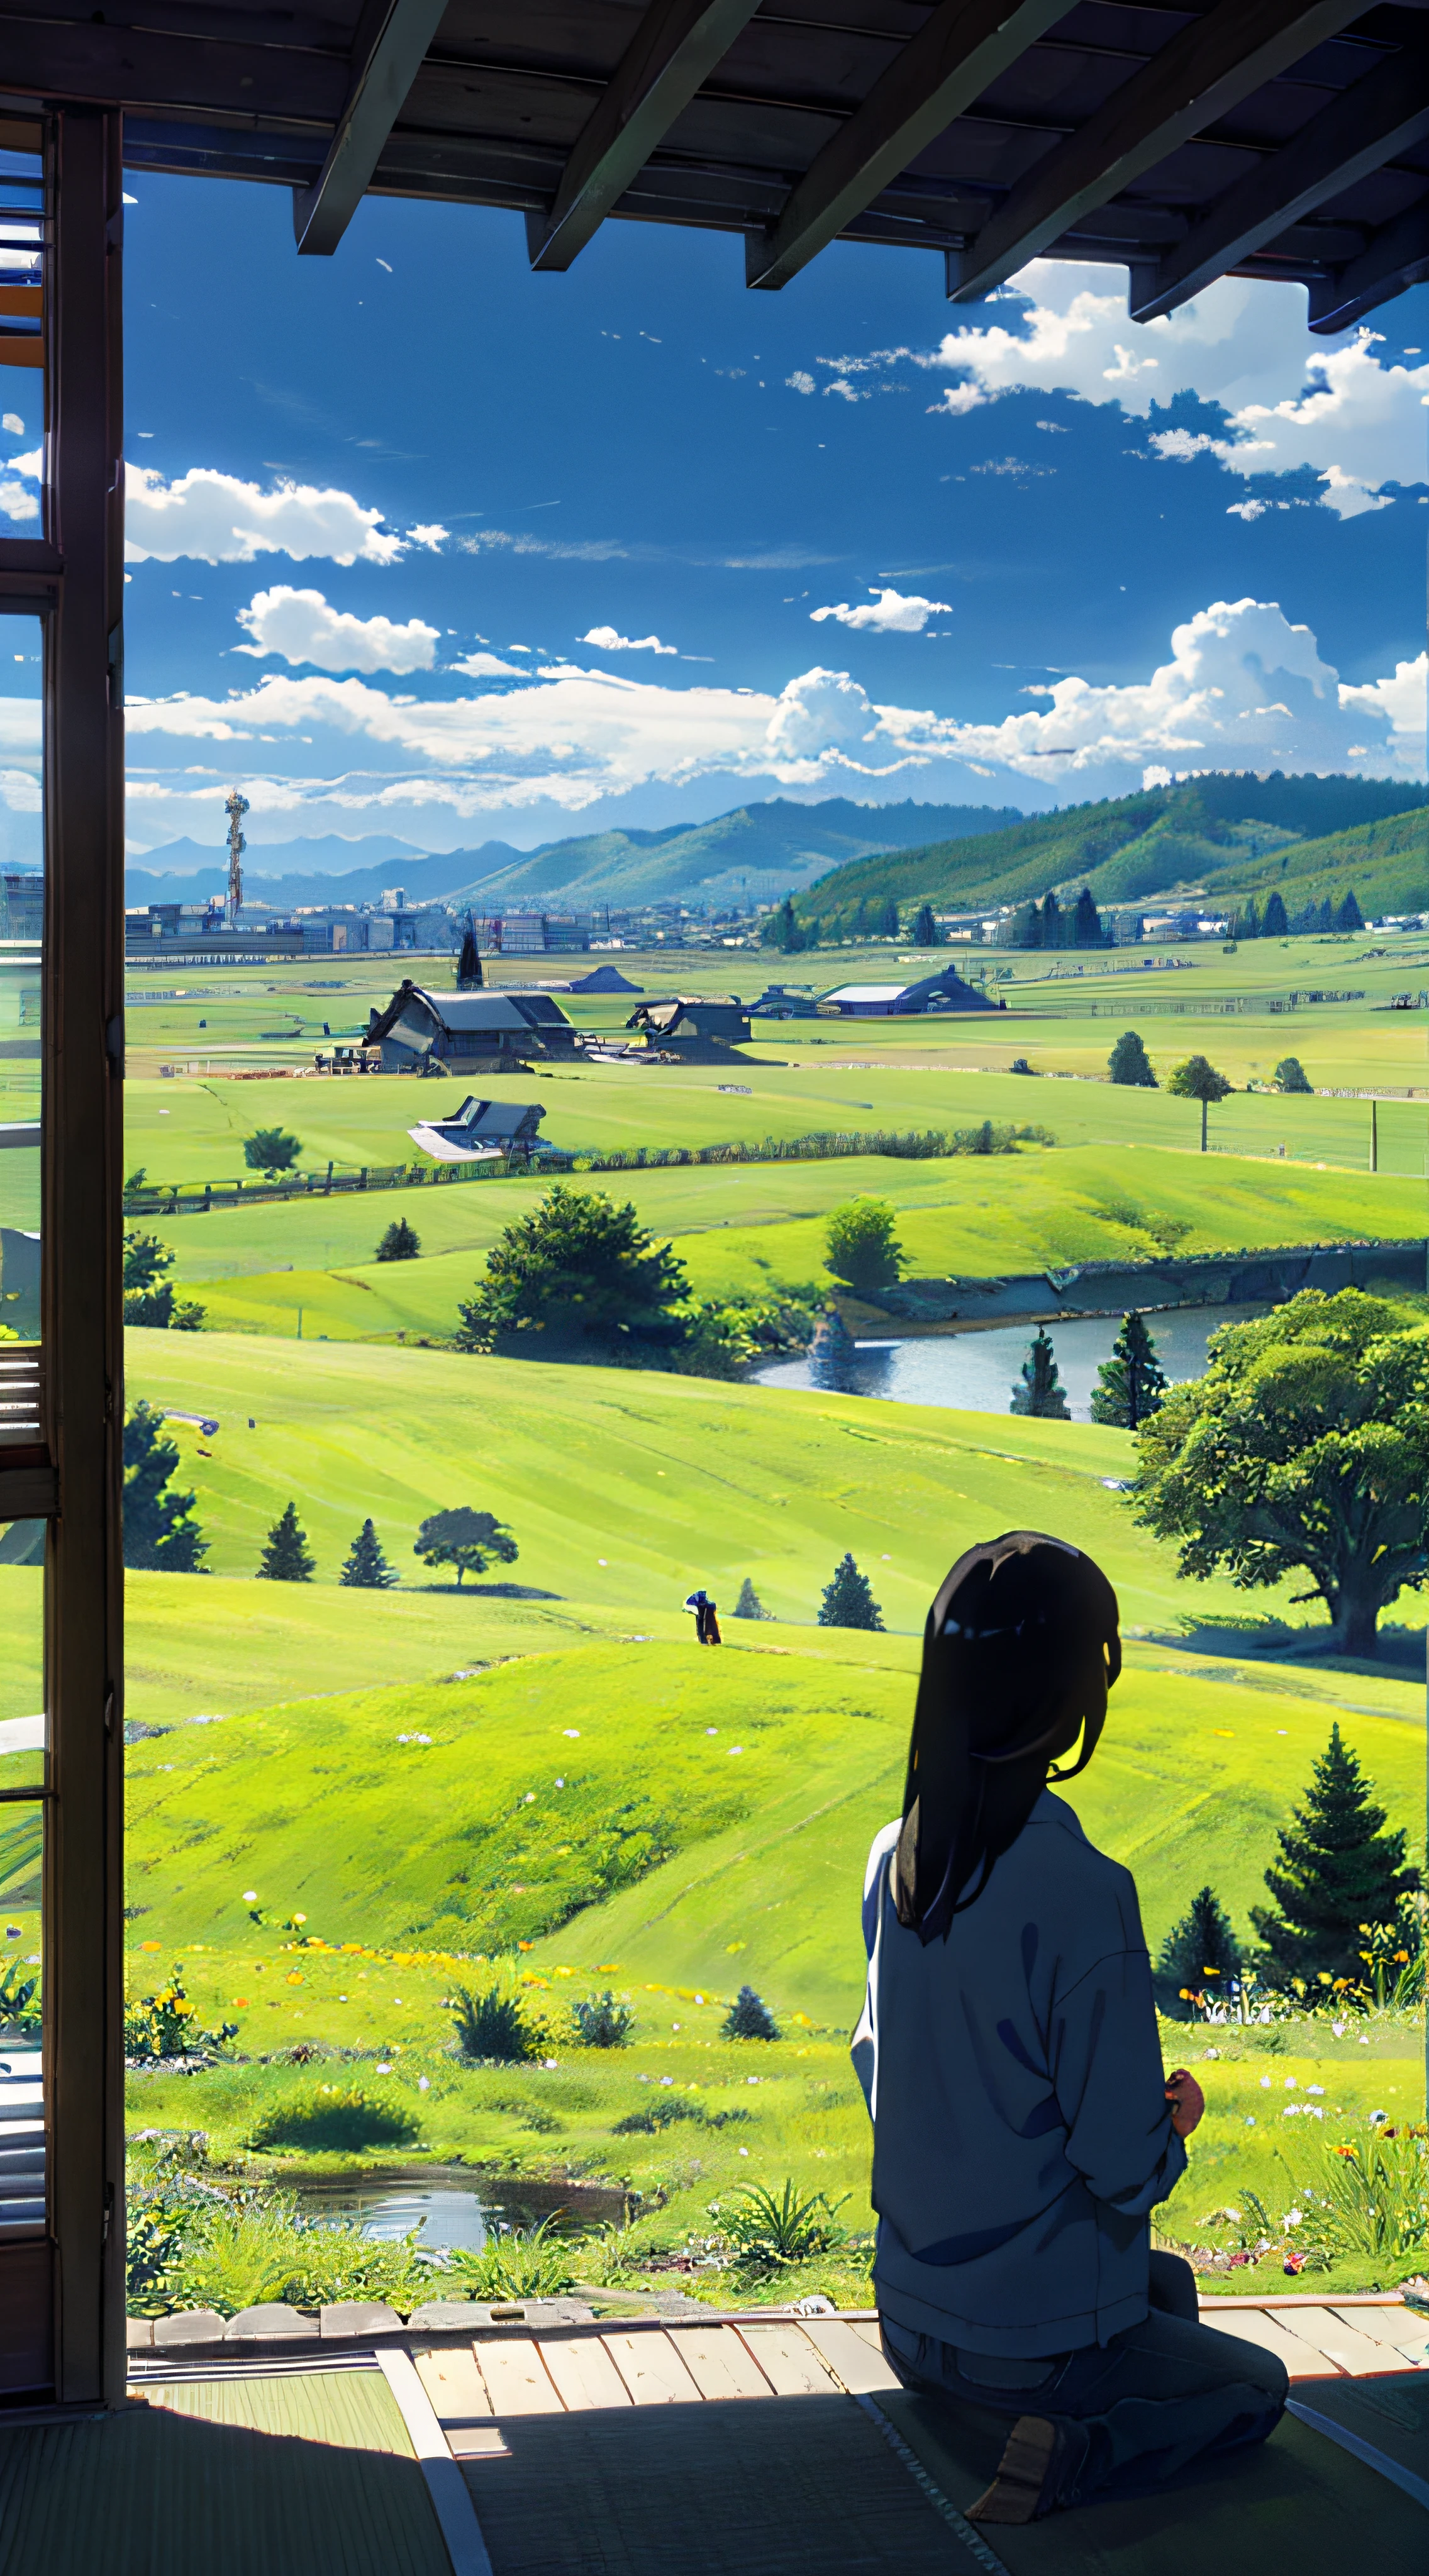 广阔而雄伟的天际线、大片天空占据了照片的三分之二、穿着休闲服装的女孩和男孩并排坐在草地上、远处有一座荒废的日本城市